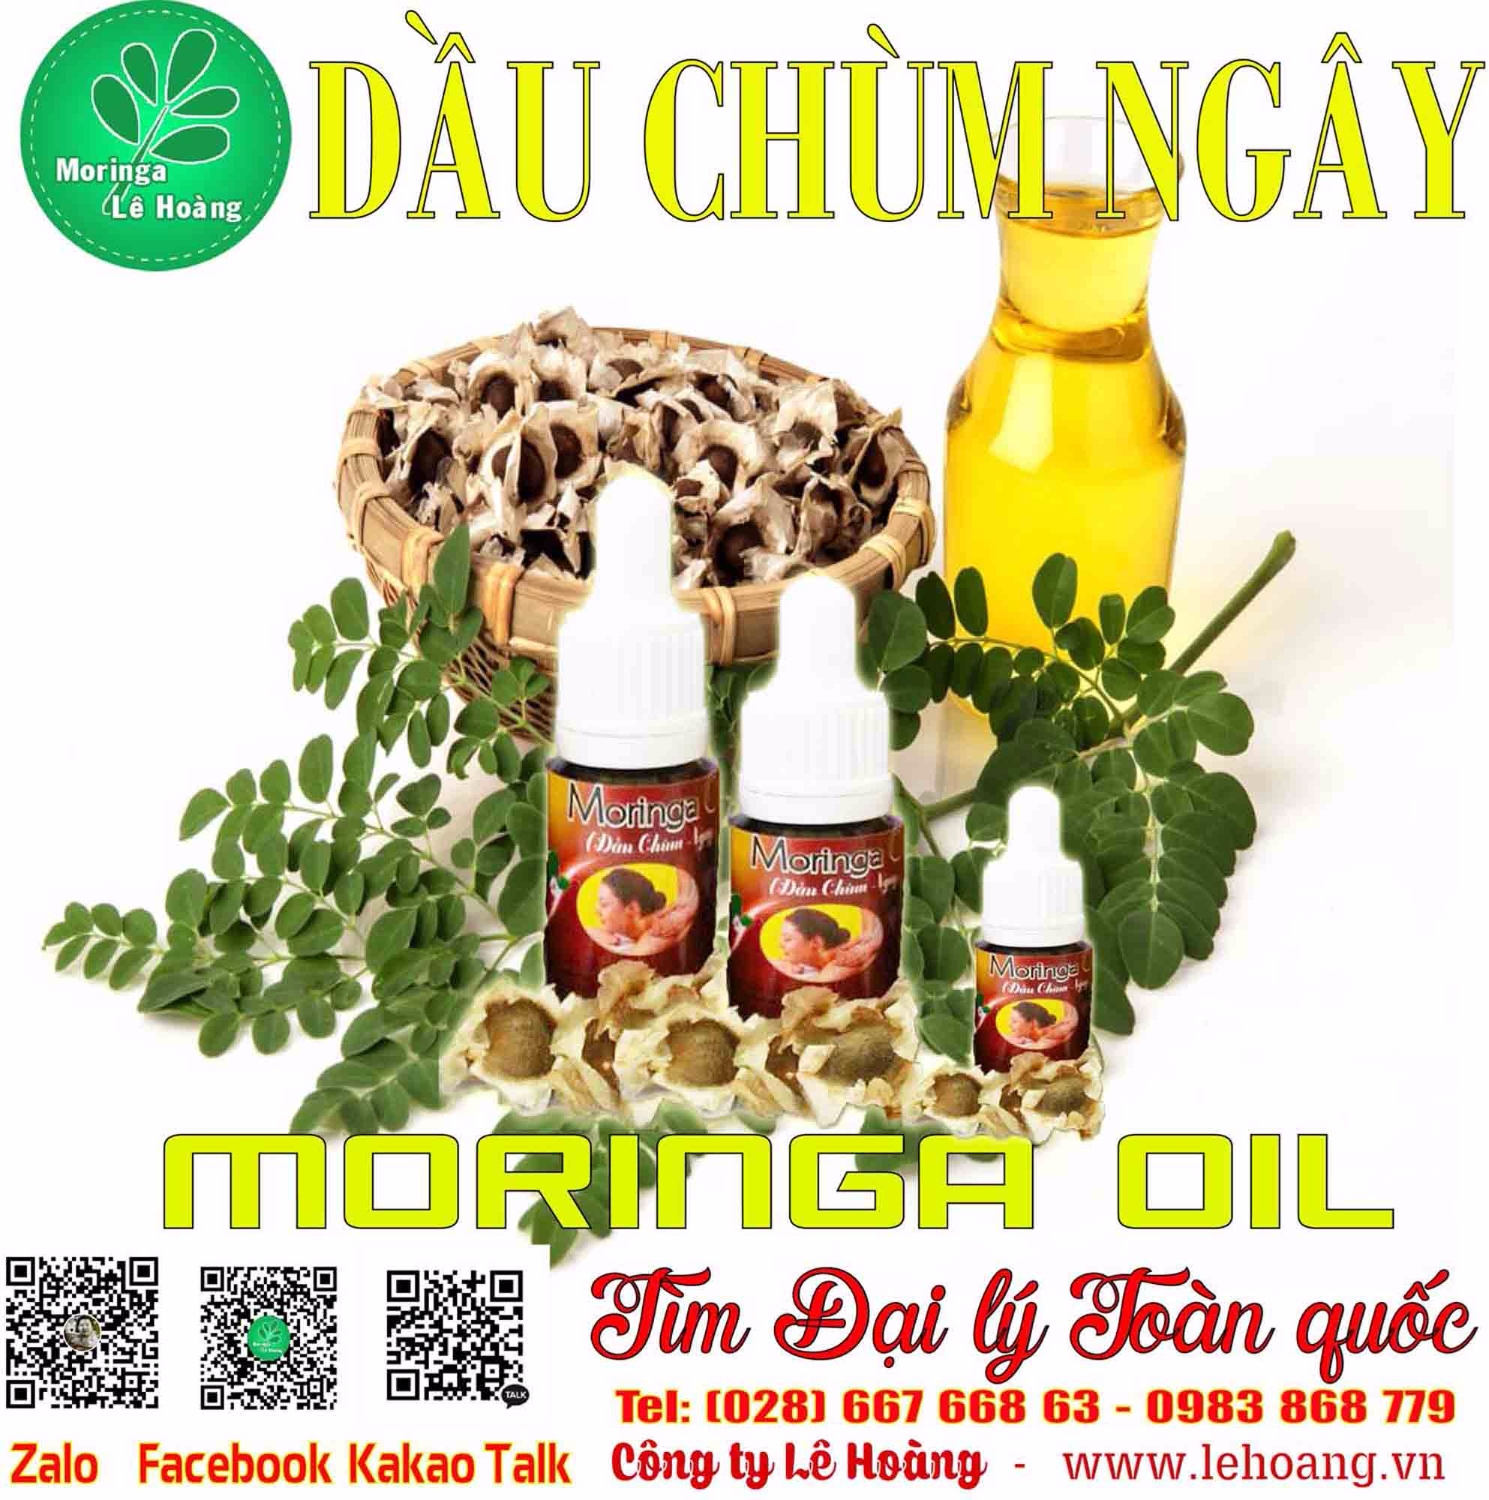 Cách sử dụng, Công dụng Tinh Dầu Chùm ngây (Moringa Seed Oil)